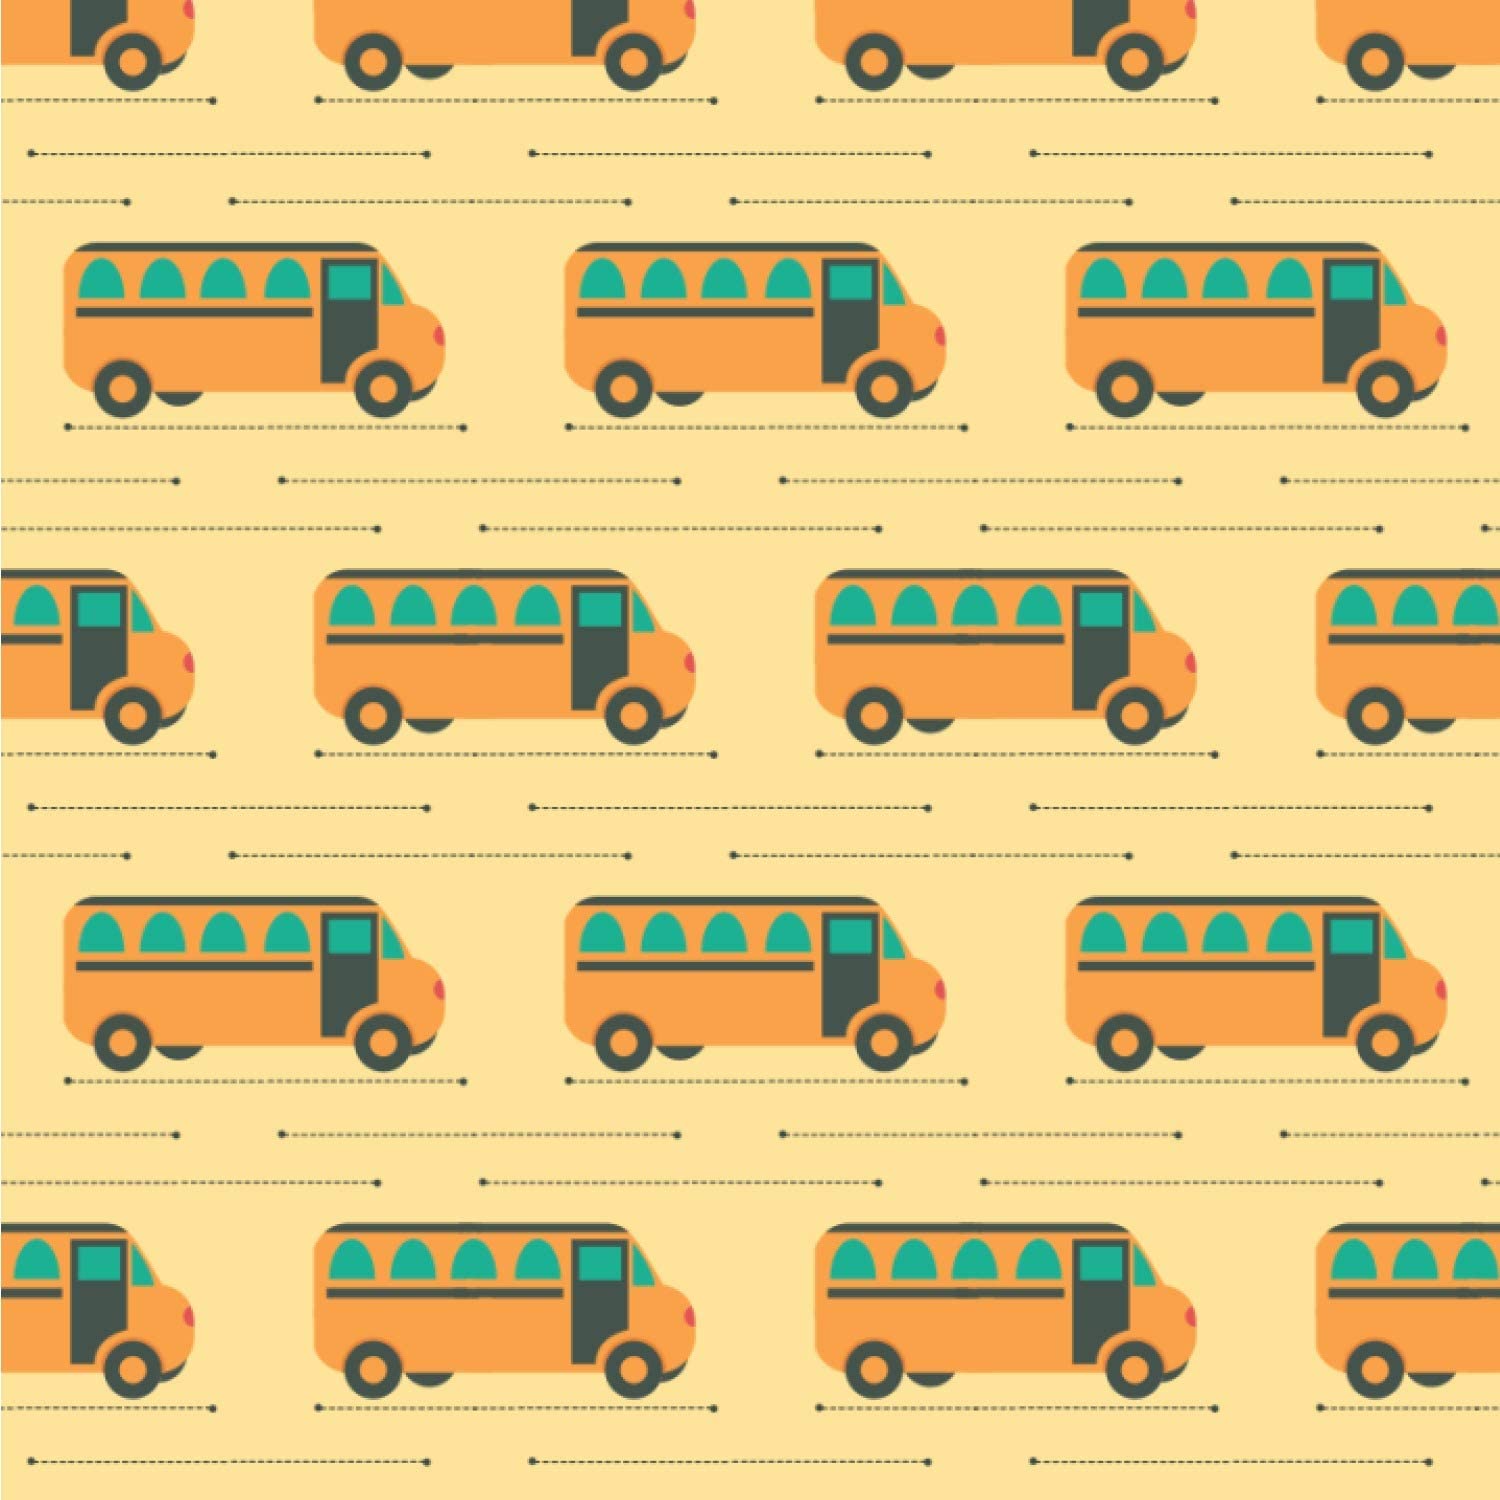 School Bus Wallpapers